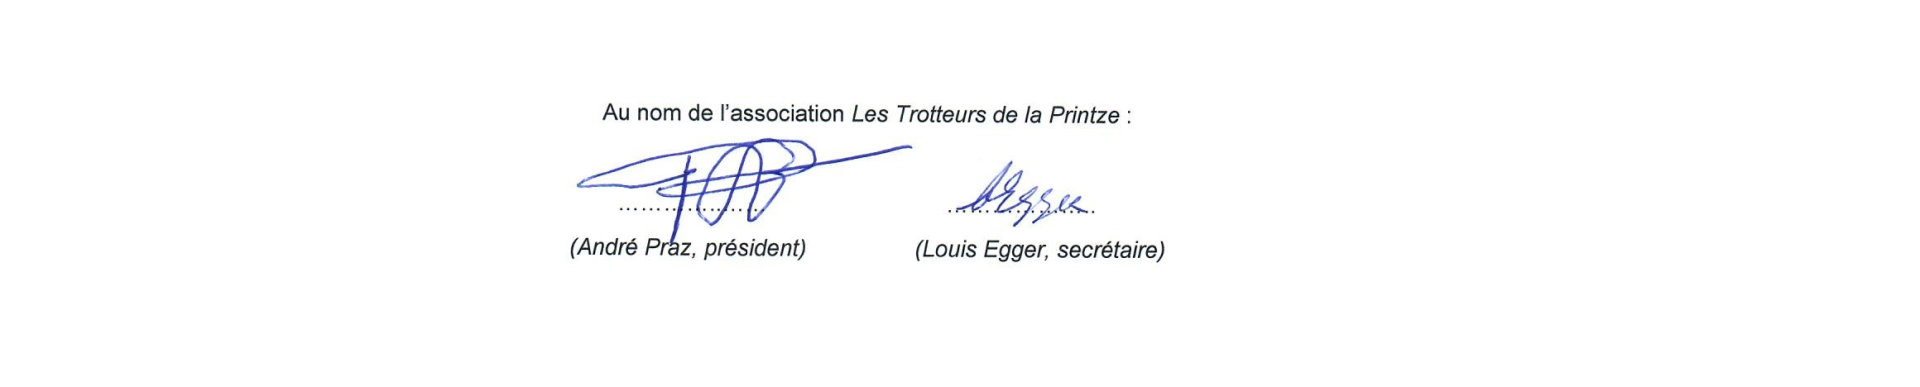 Signatures 1